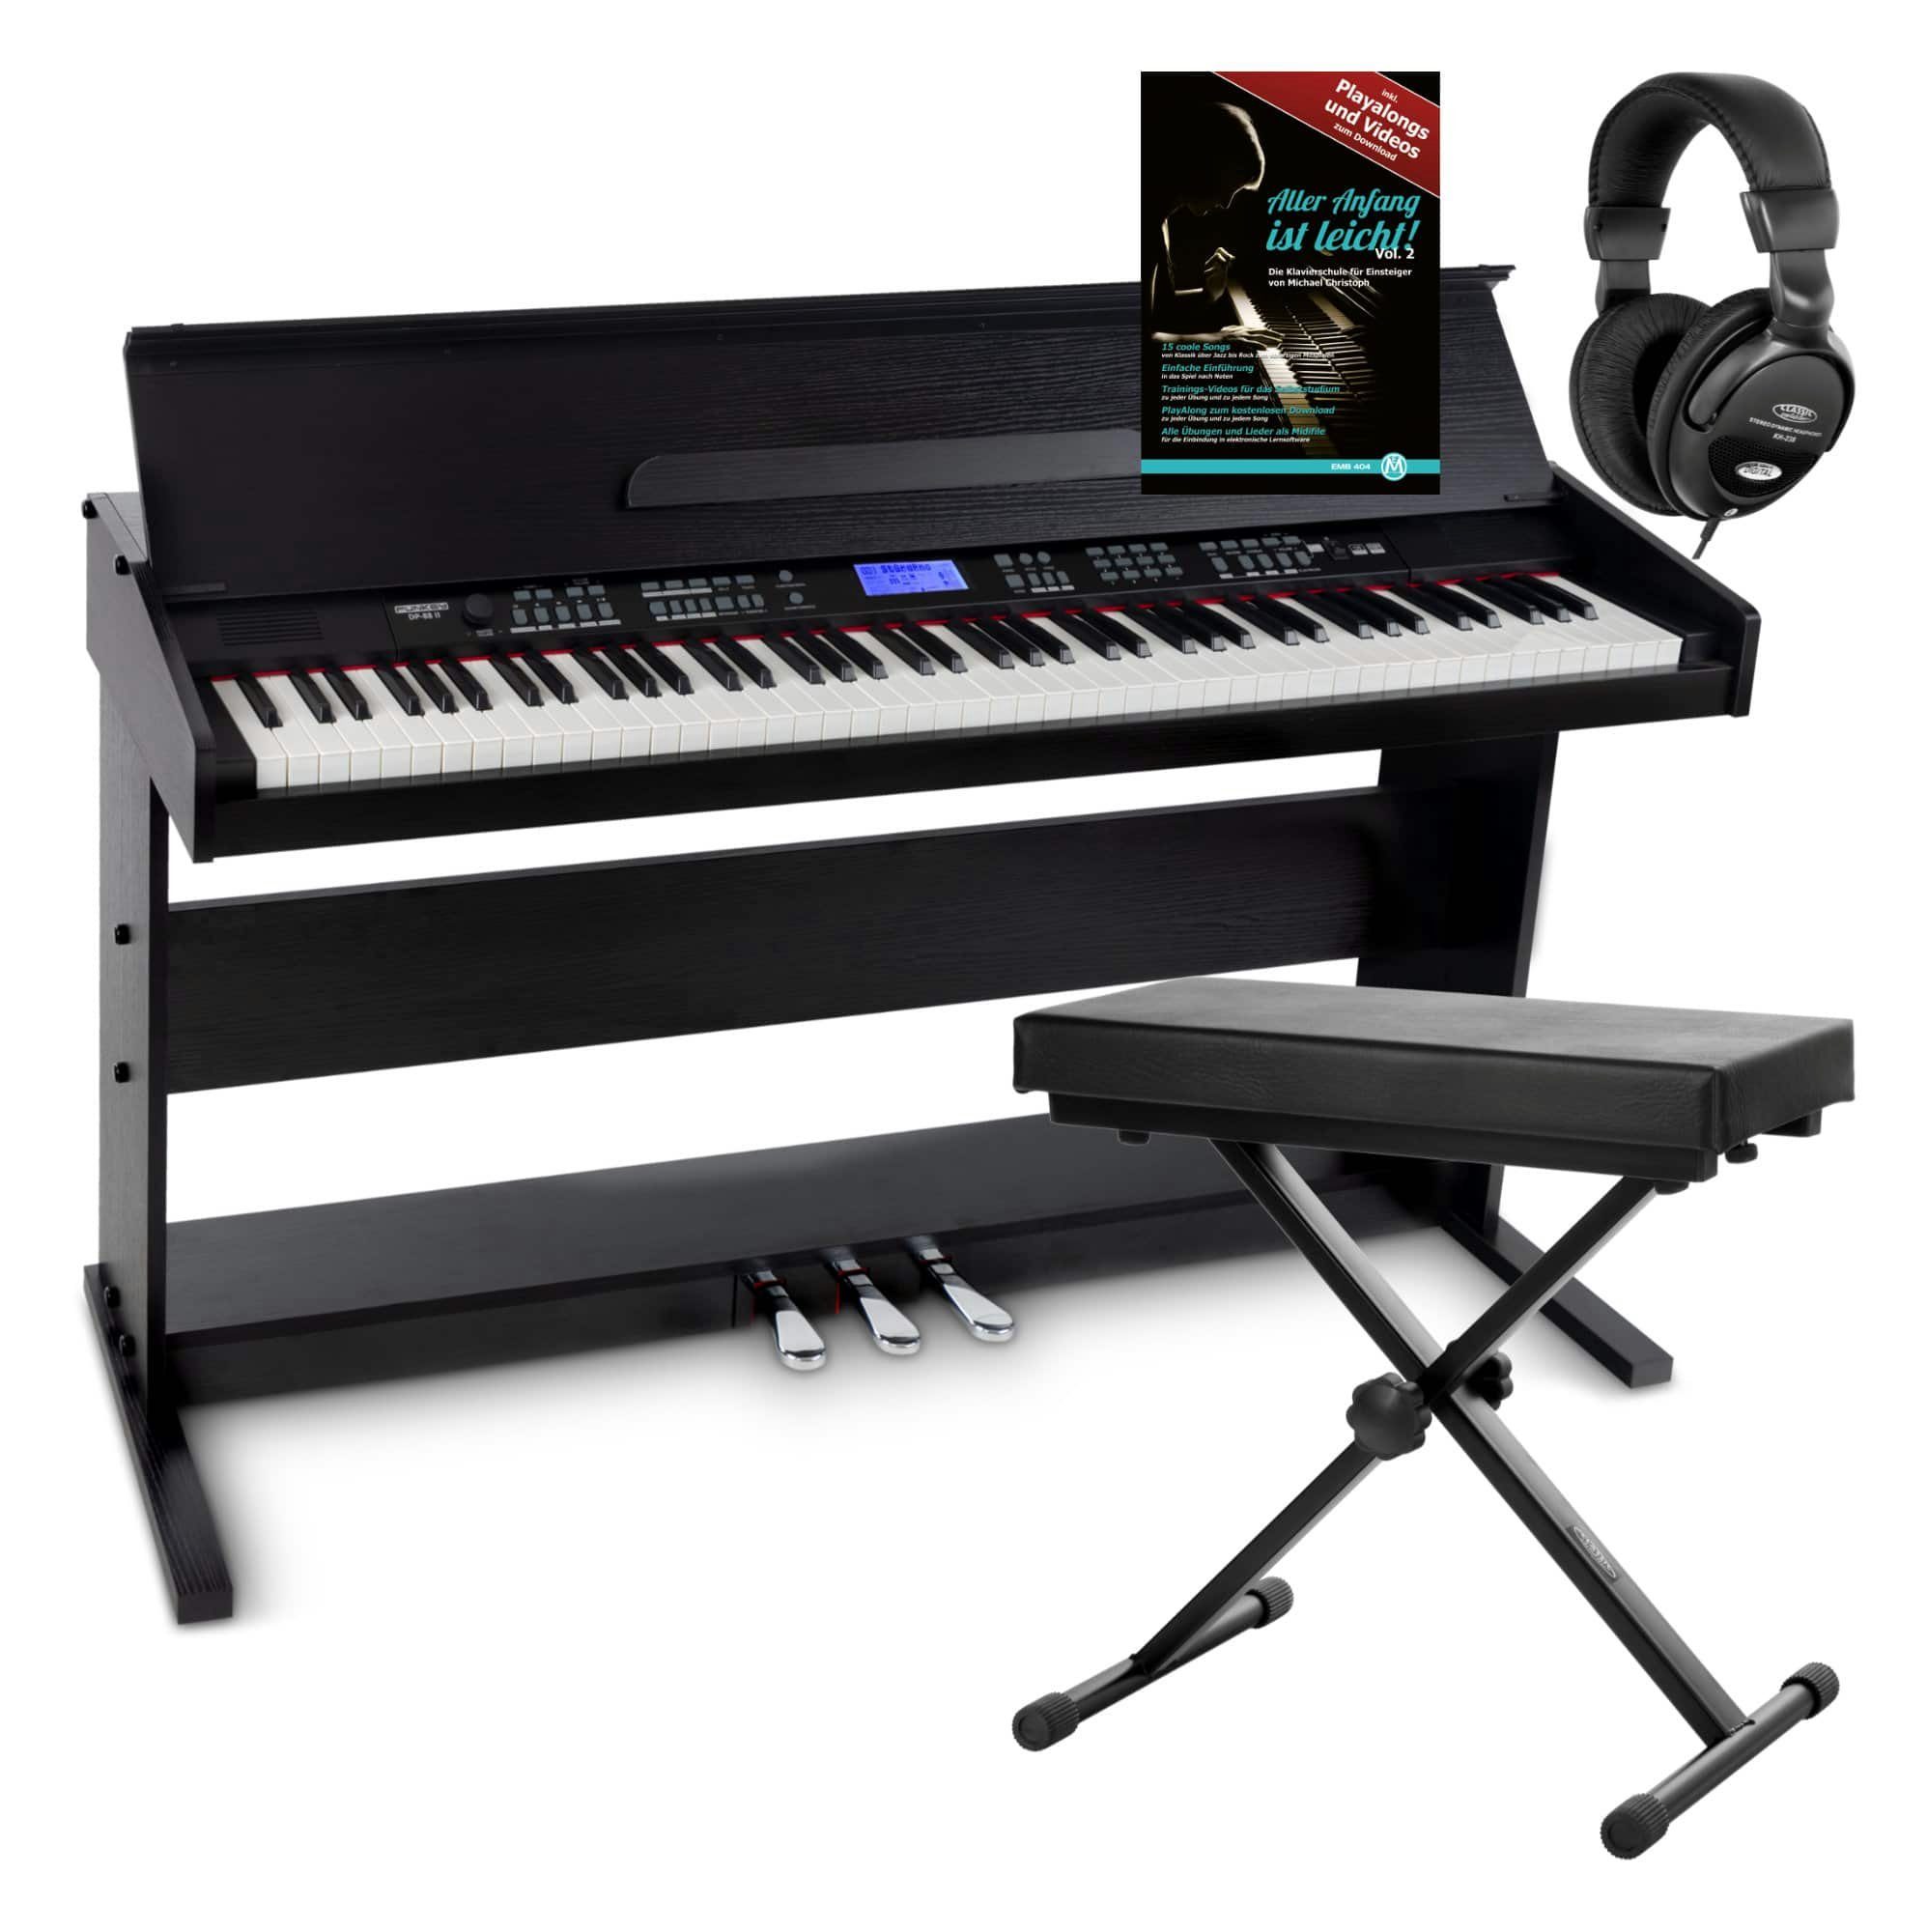 FunKey Digitalpiano DP-88 II E-Piano mit 88 anschlagsdynamische Tasten (Spar-Set, 4-St., inkl. Keyboardbank, Kopfhörer und Klavierschule), umfangreiche Begleitautomatik und Keyboard Chord Akkordbegleitung